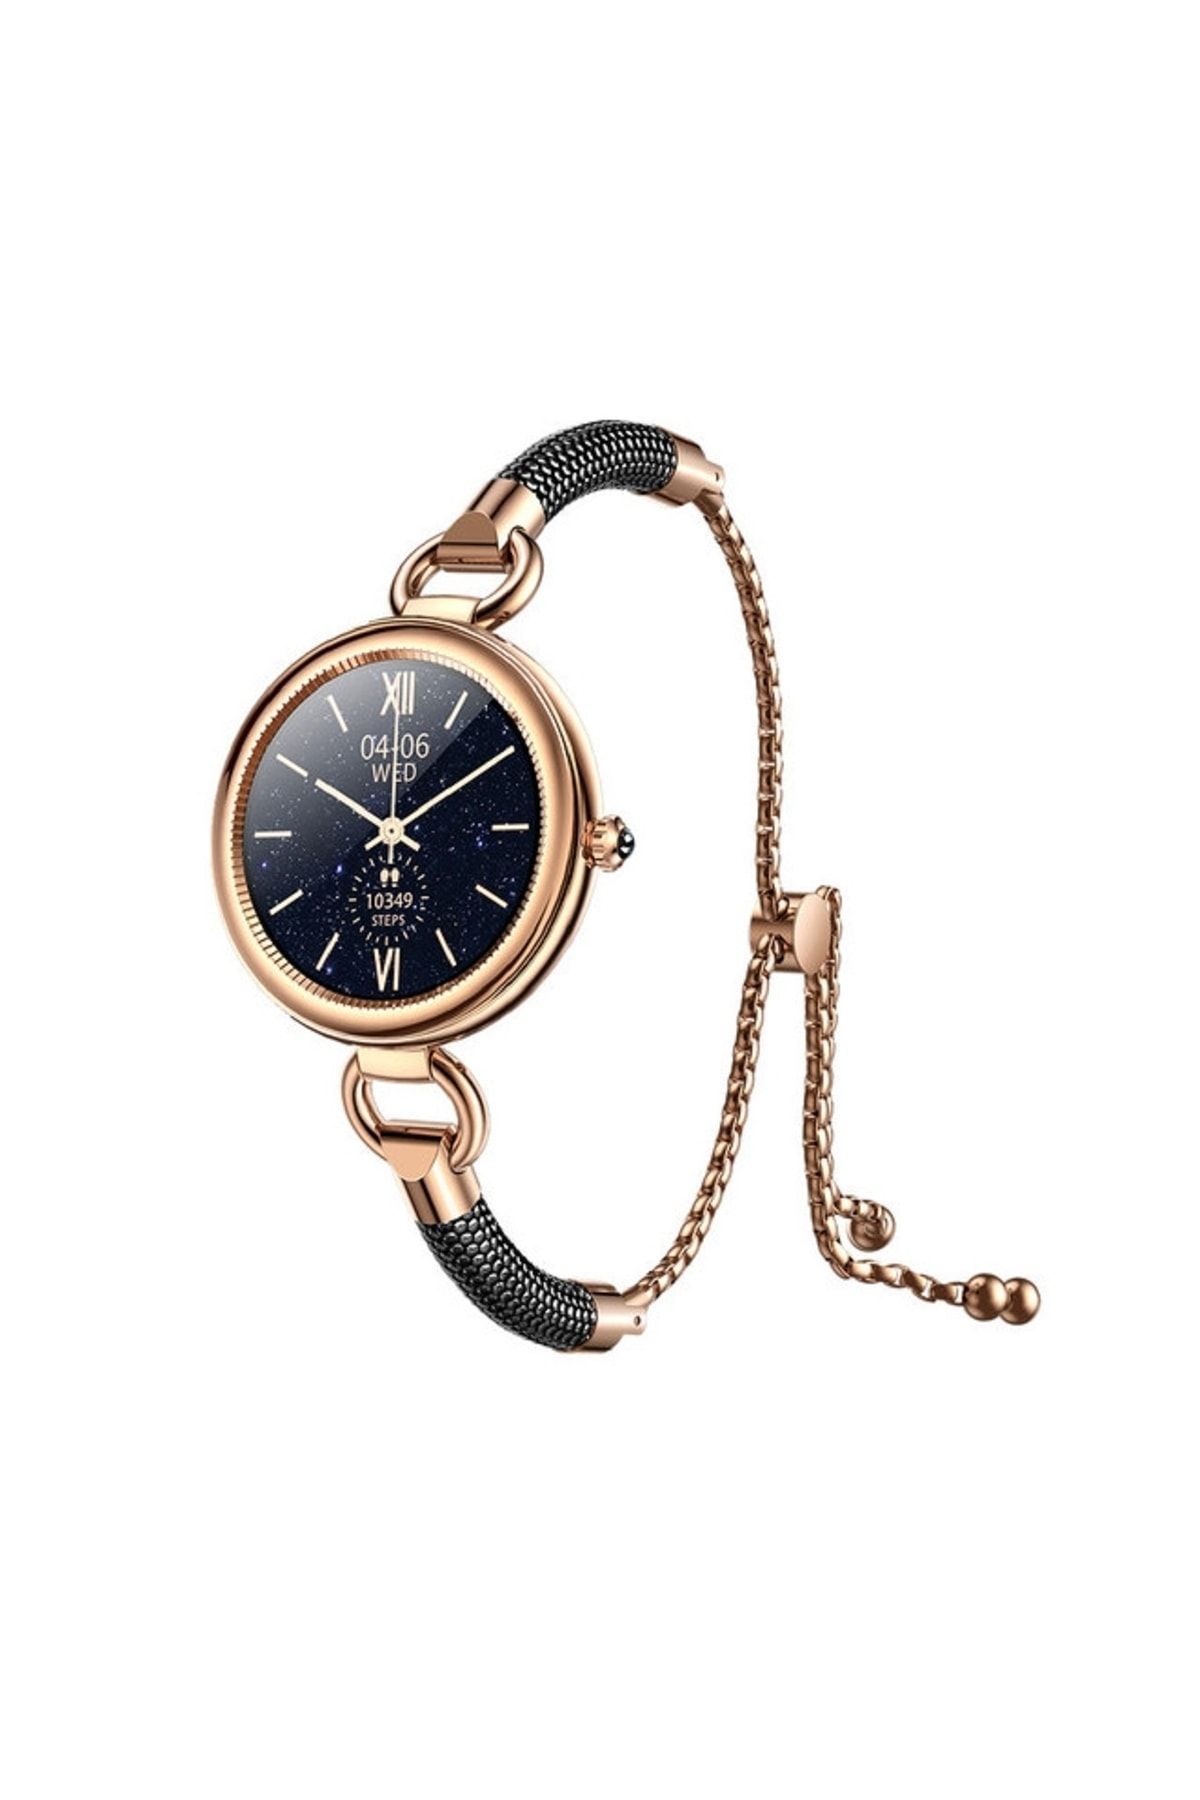 Şıktek Gt4pro Smart Watch Kadın Akıllı Saat Elmas Kordon Çelik Kasa Su Geçirmez Akıllı Saat